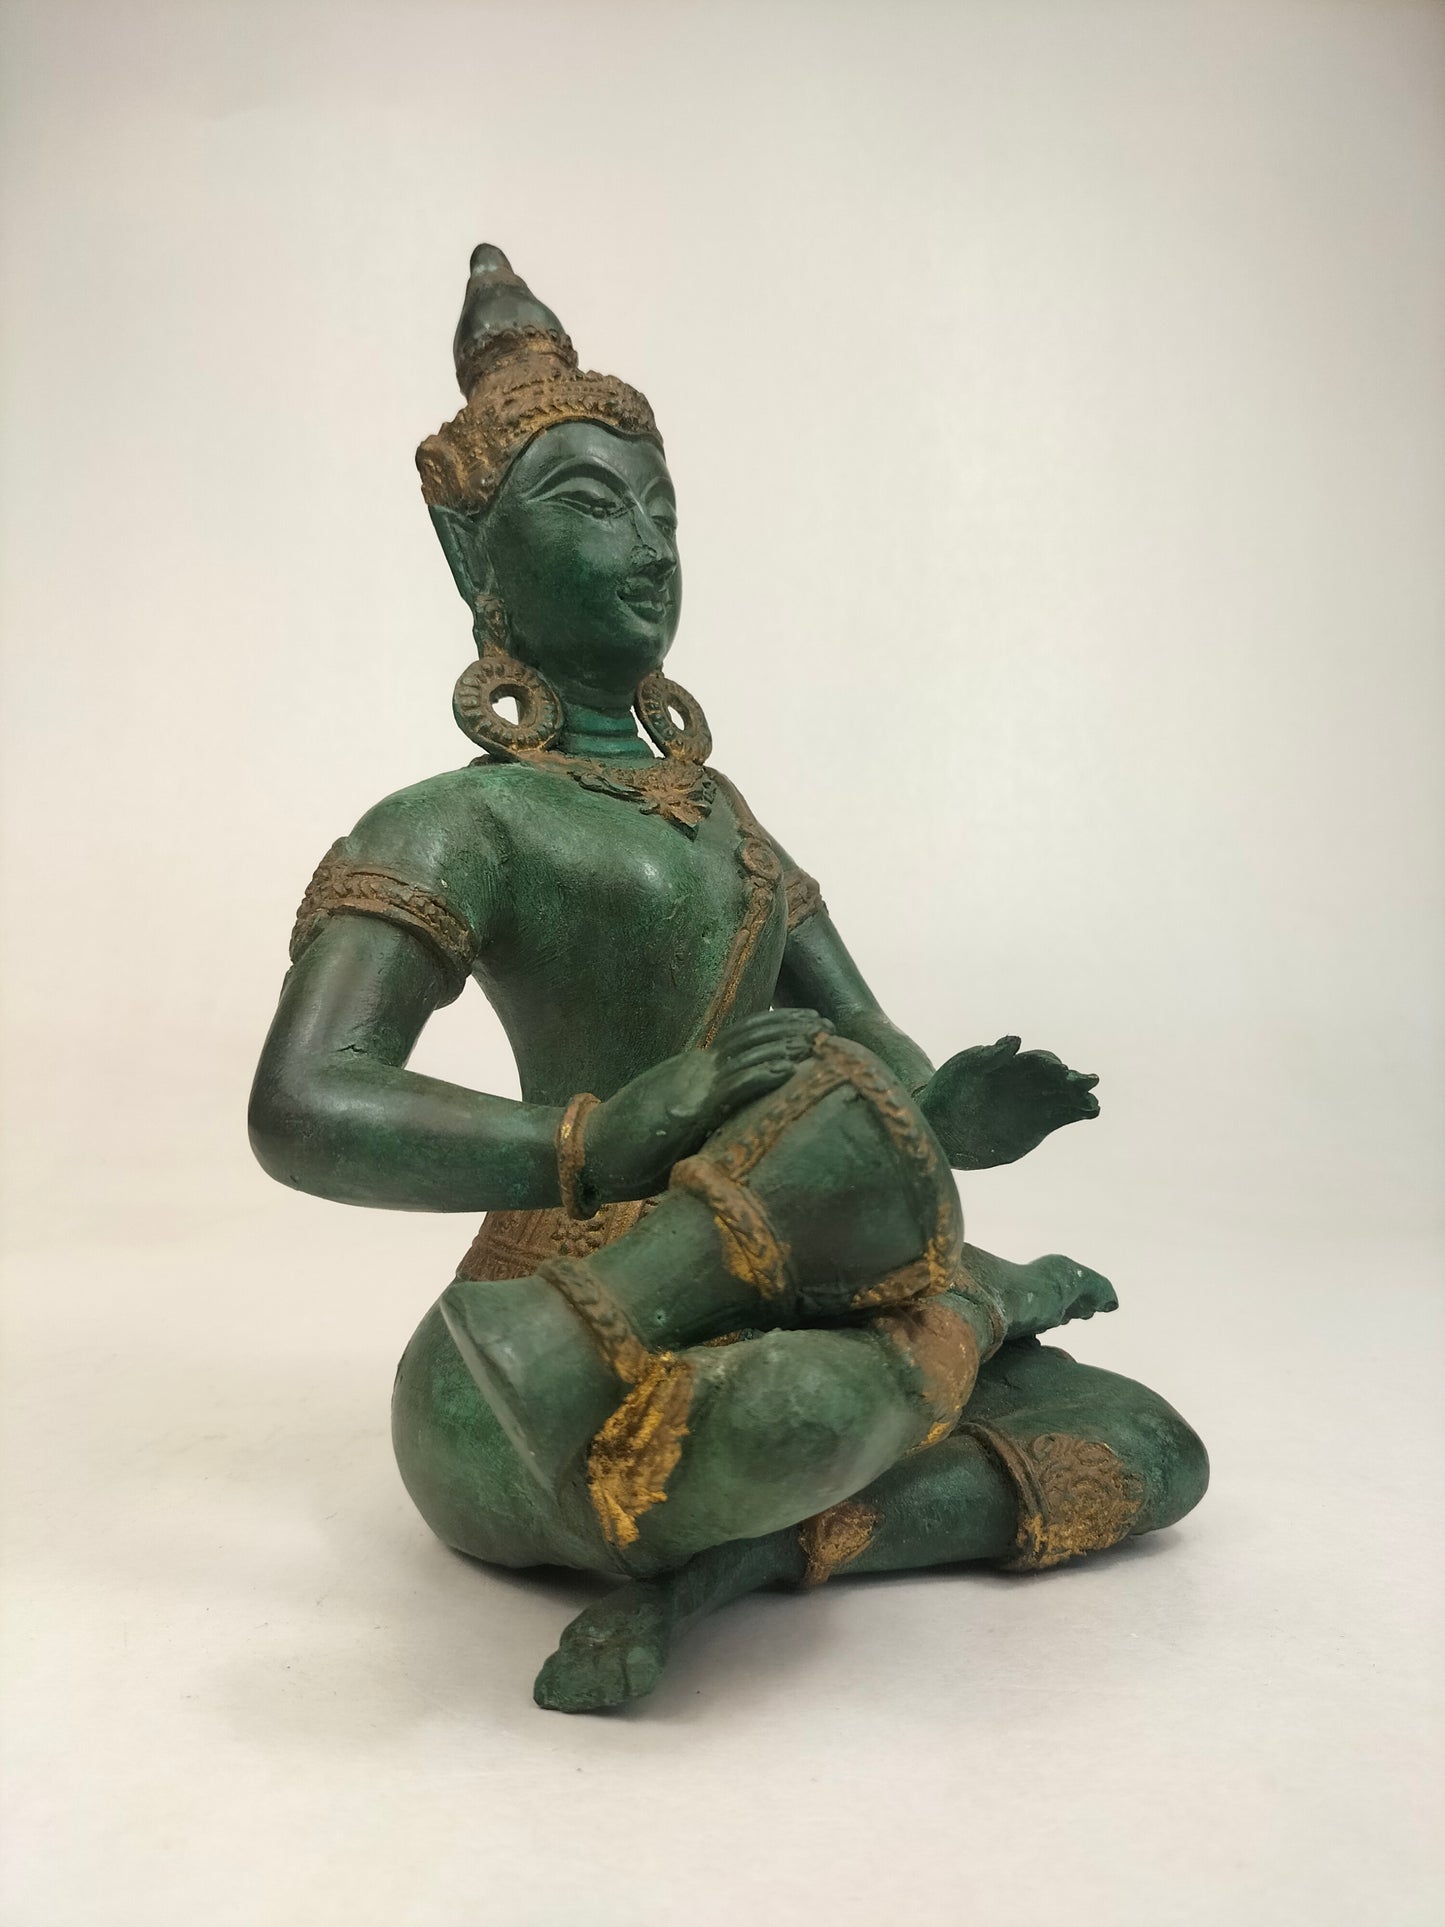 تمثال بوذا البرونزي المذهب لحارس المعبد // ثالياند - القرن العشرين